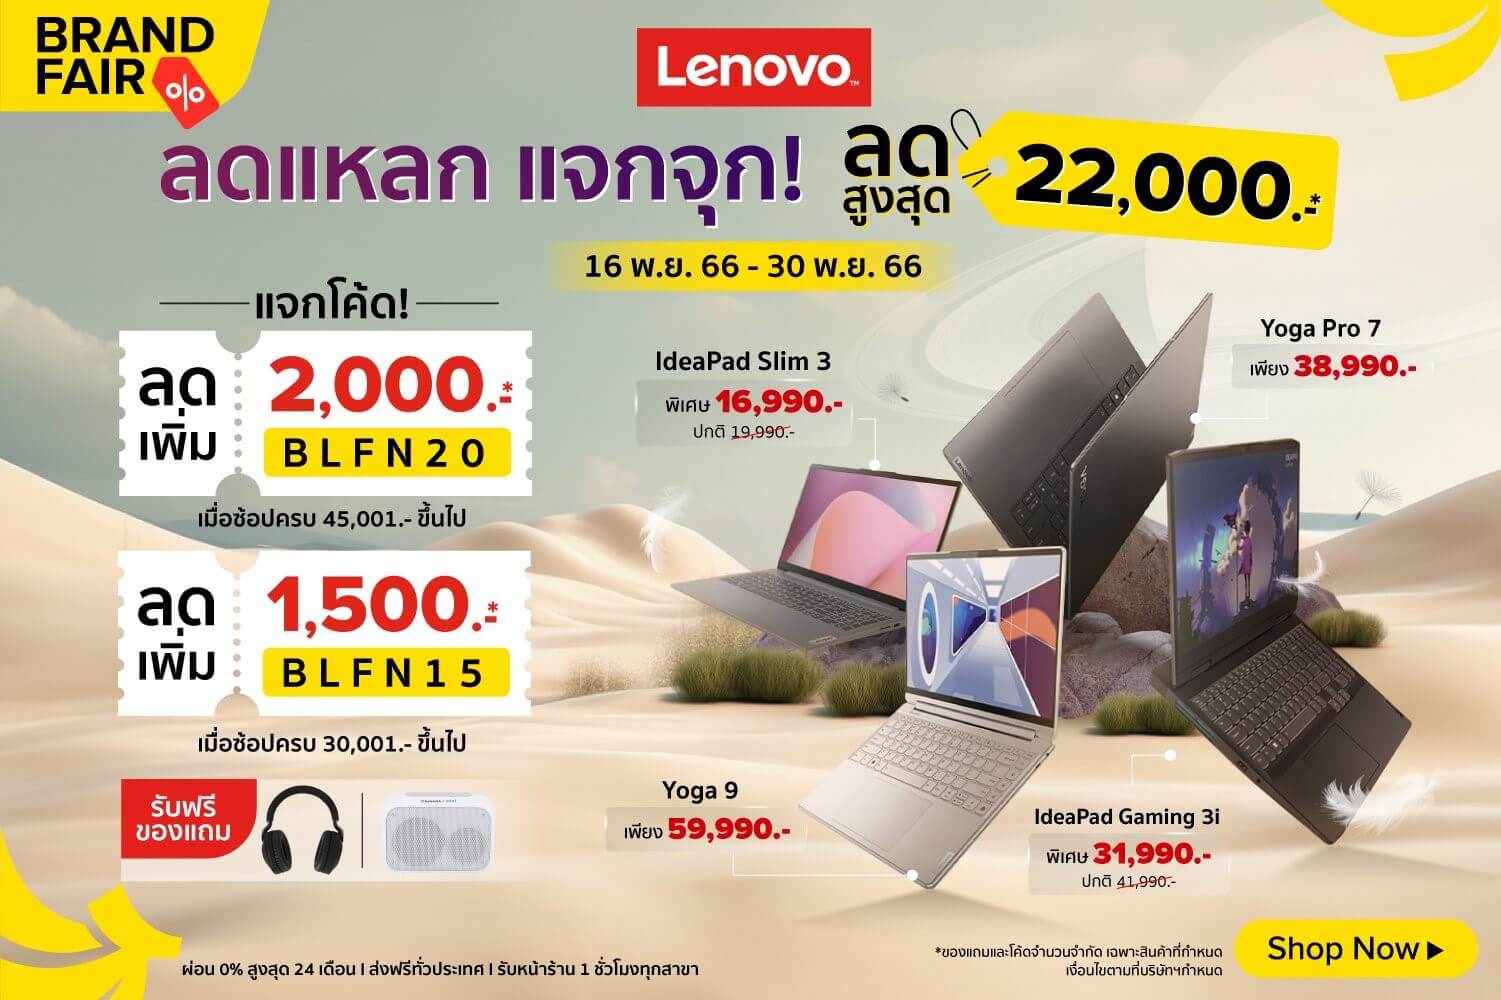 Lenovo Brand Fair 1